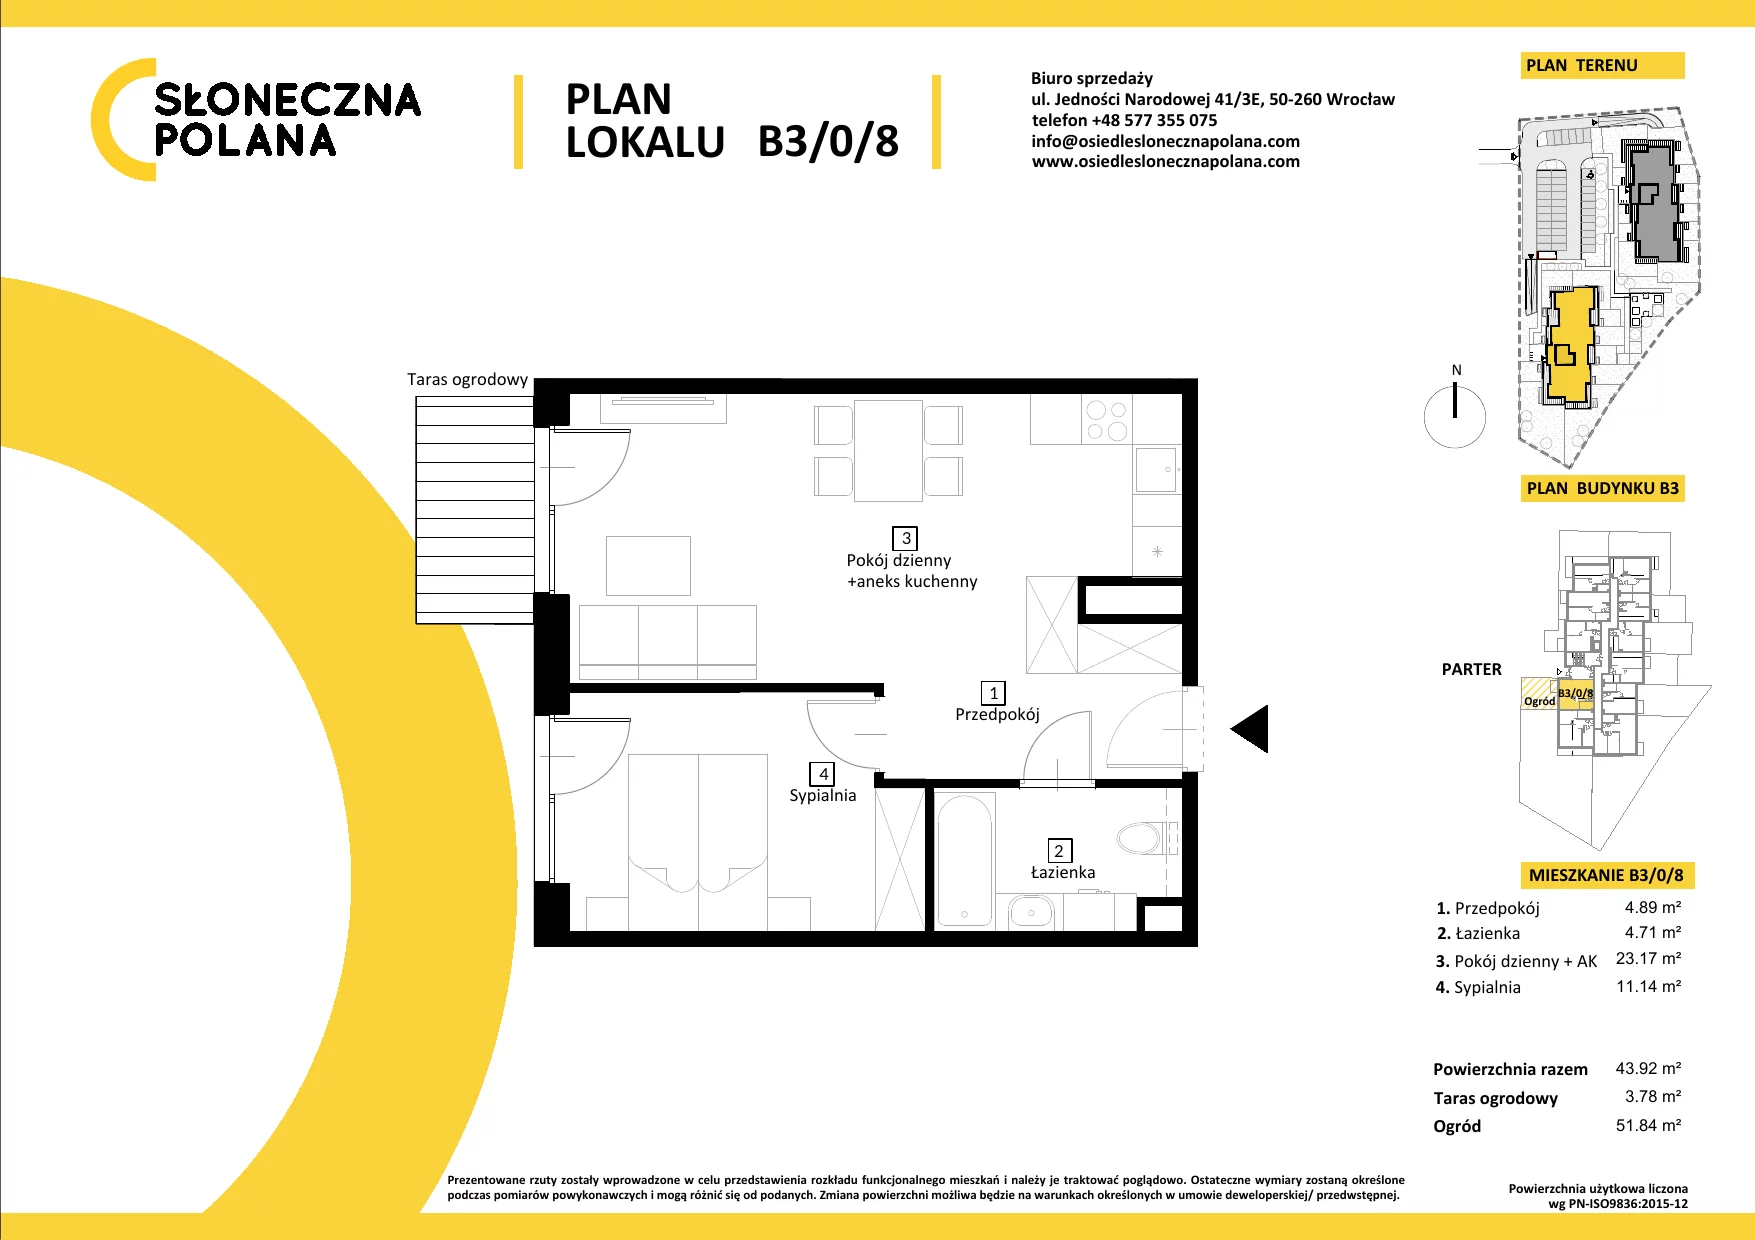 Mieszkanie 43,92 m², parter, oferta nr B3/0/8, Słoneczna Polana, Kudowa-Zdrój, ul. Bluszczowa